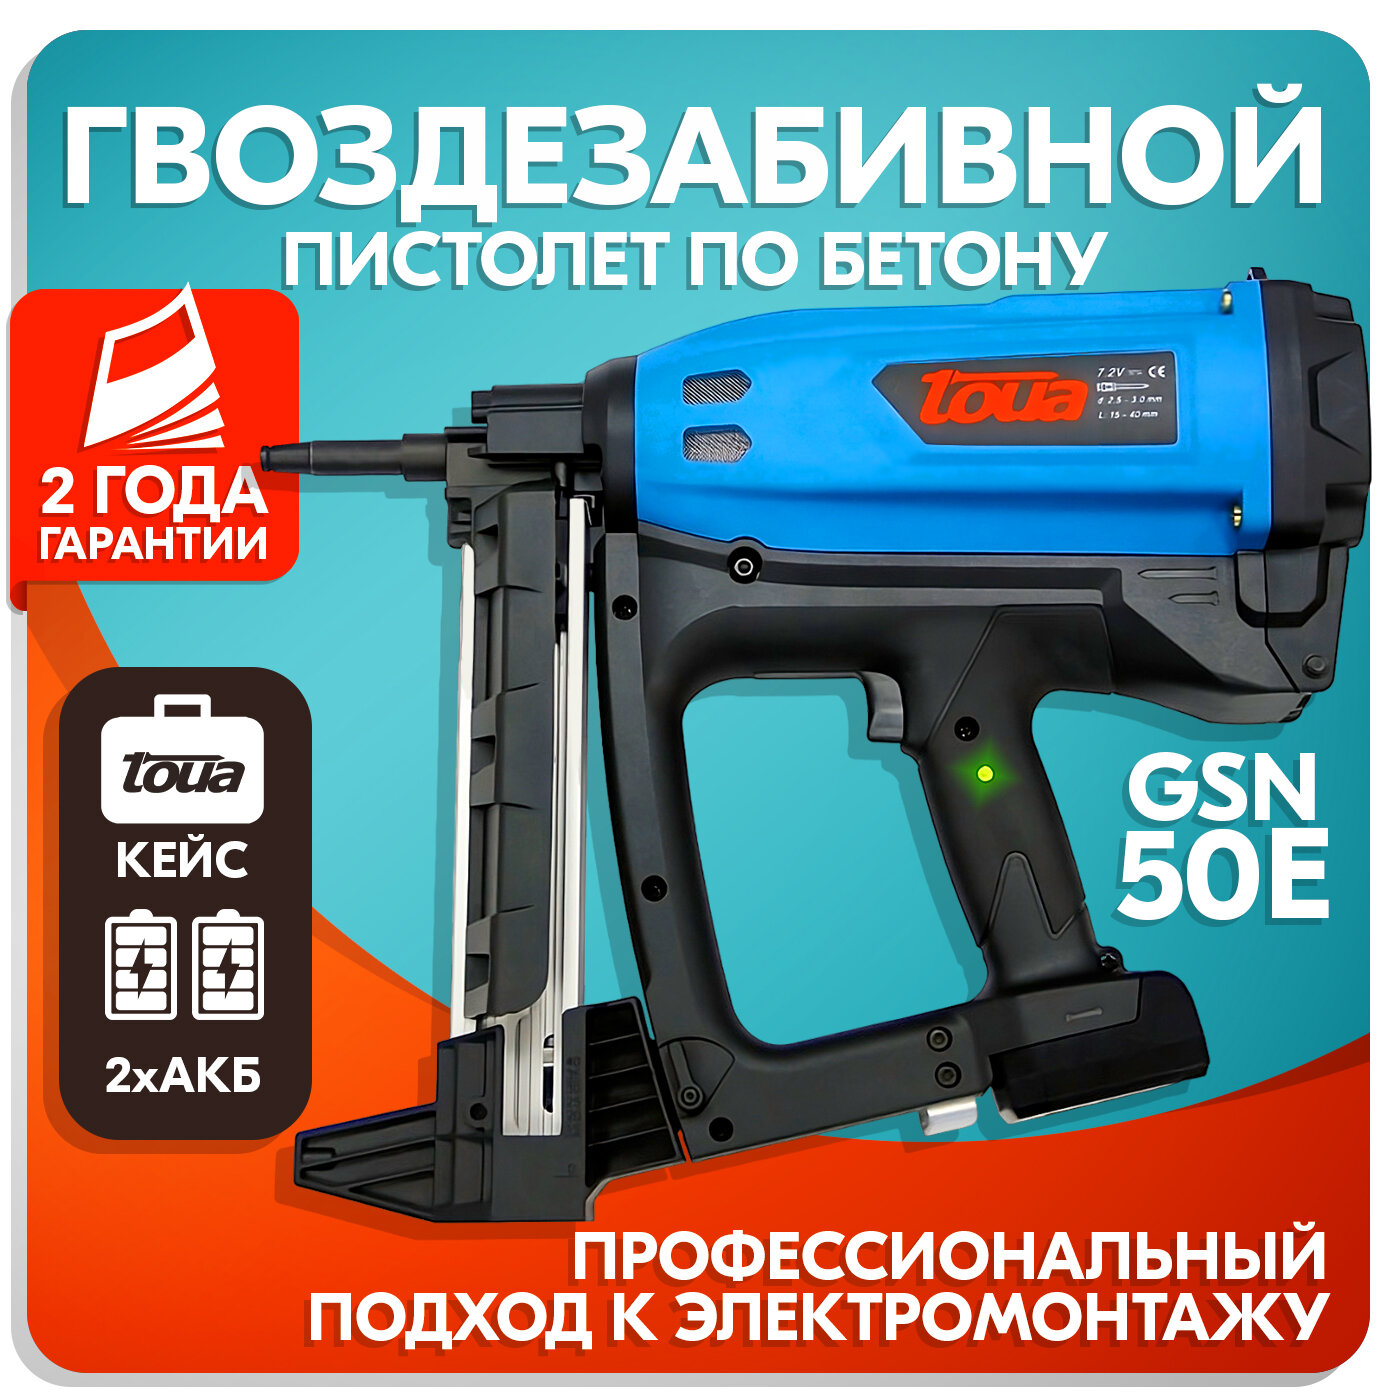 Гвоздезабивной пистолет по бетону TOUA GSN50Е, газовый монтажный пистолет, кейс, 2 аккумулятора